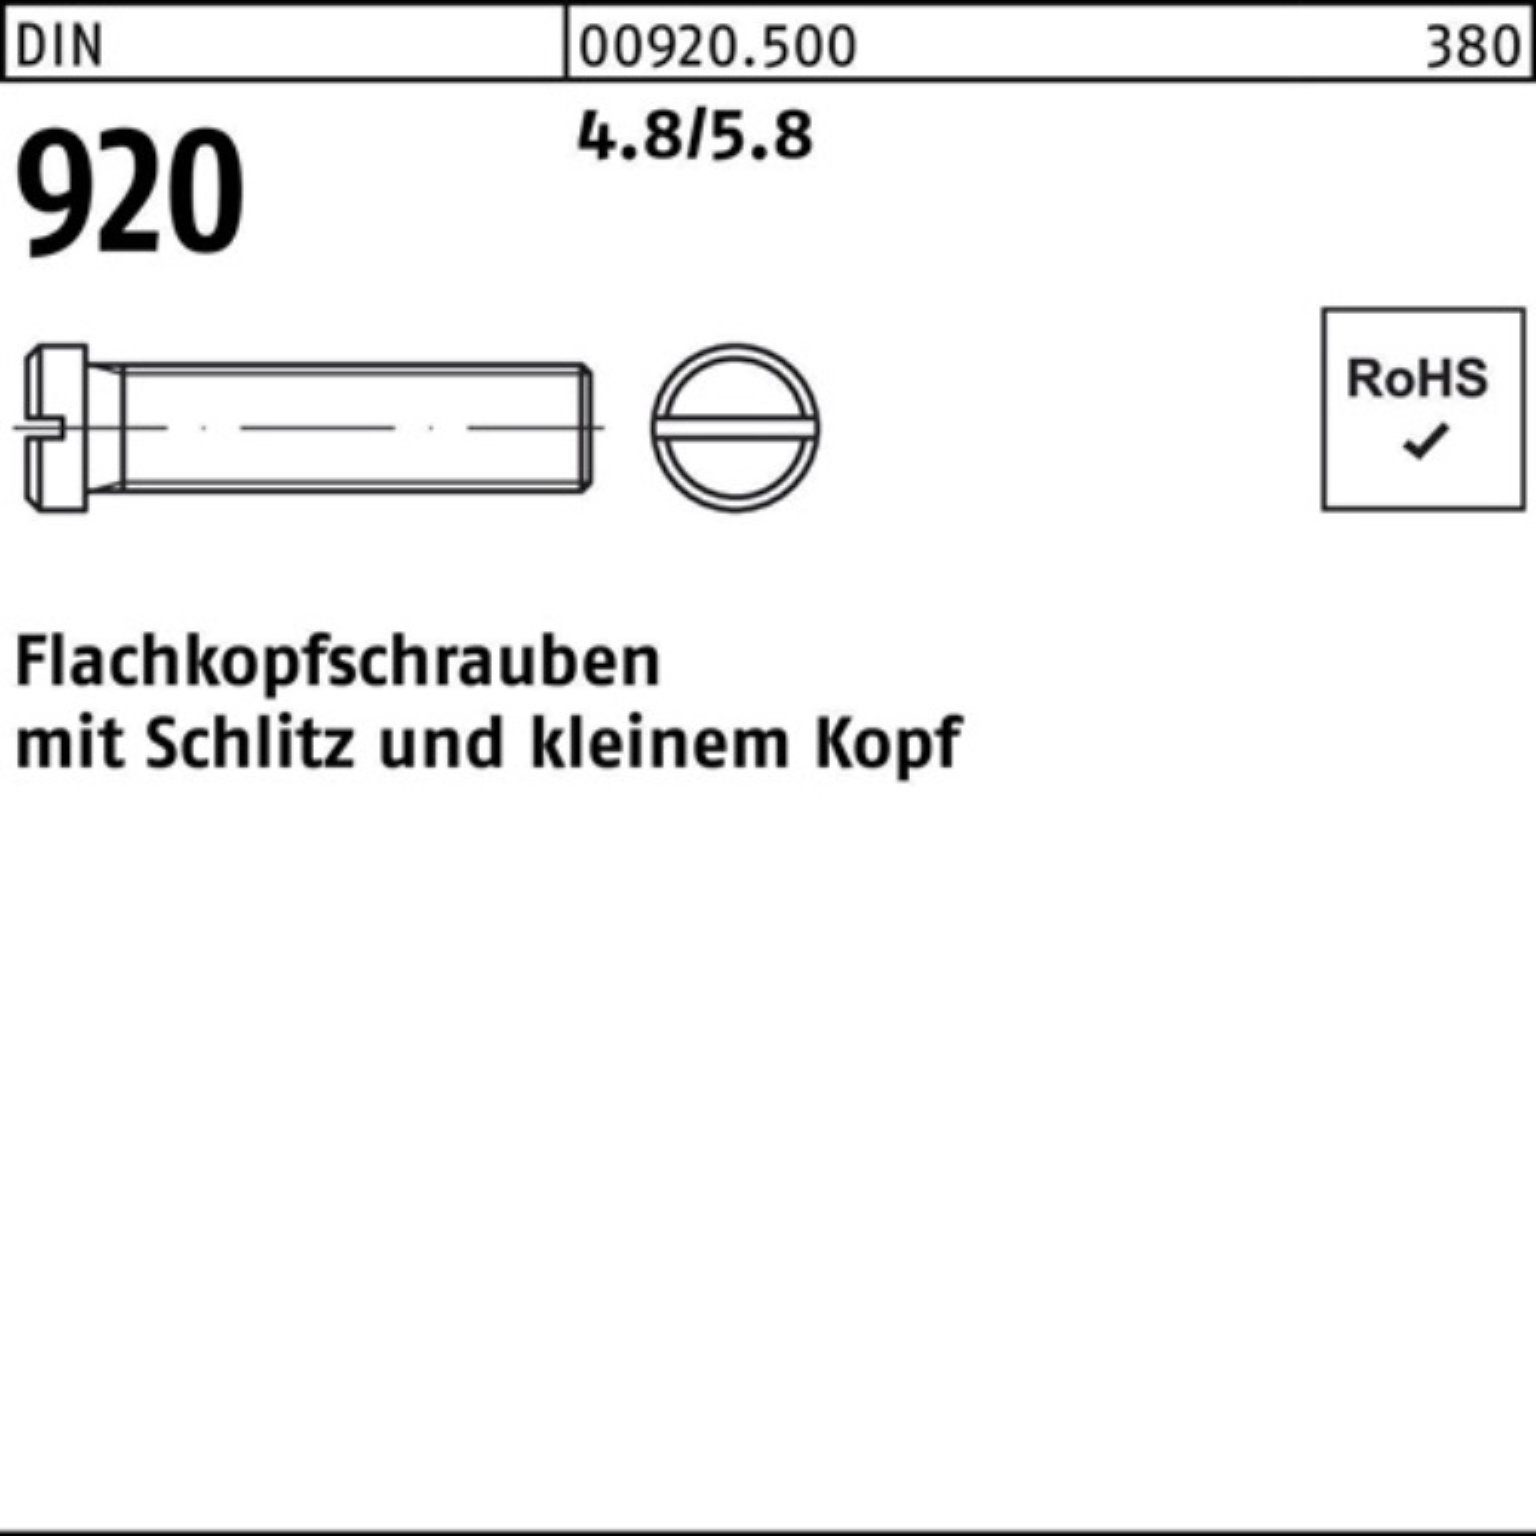 Reyher Schraube 100er Pack Flachkopfschraube DIN 920 Schlitz M3x 3 4.8/5.8 100 Stück